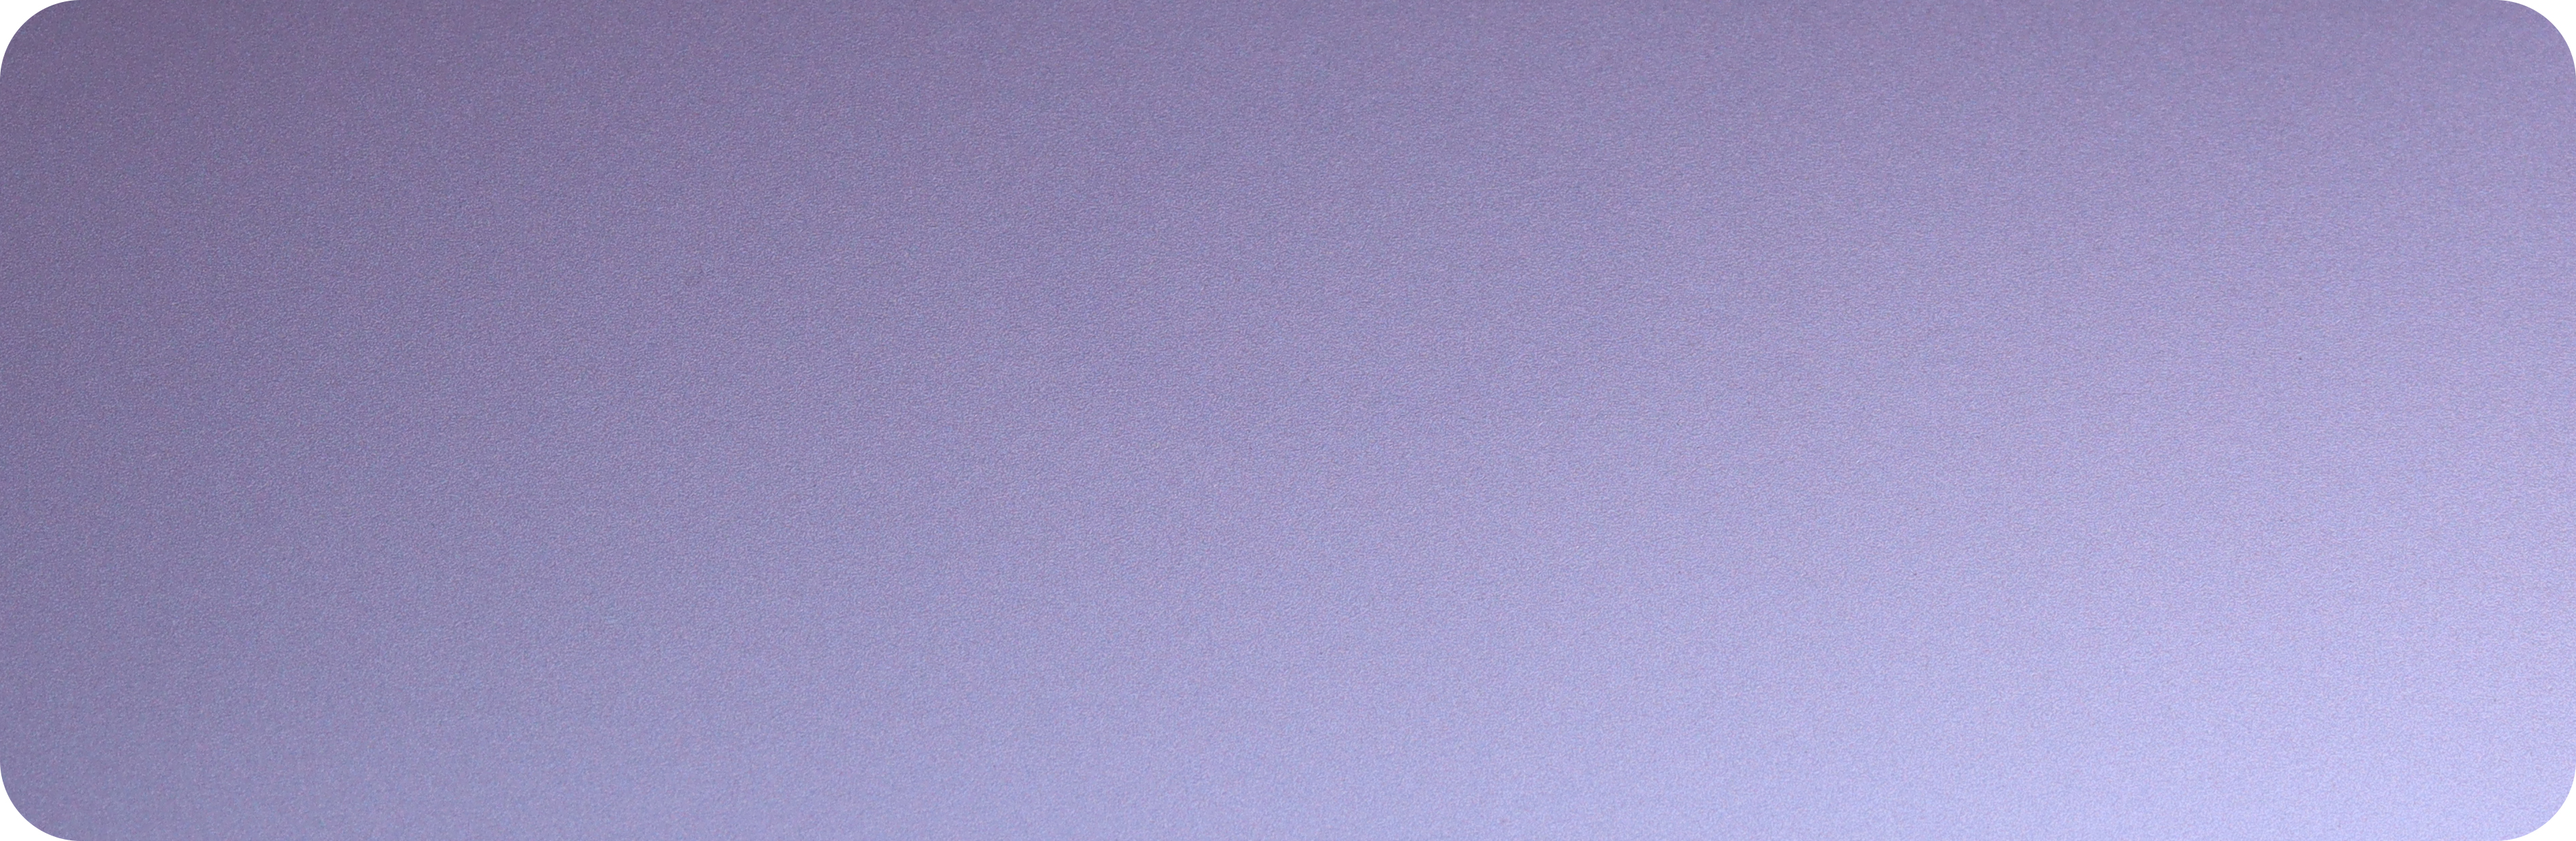 9.TPU星黛紫-TPU-xingdai purpura